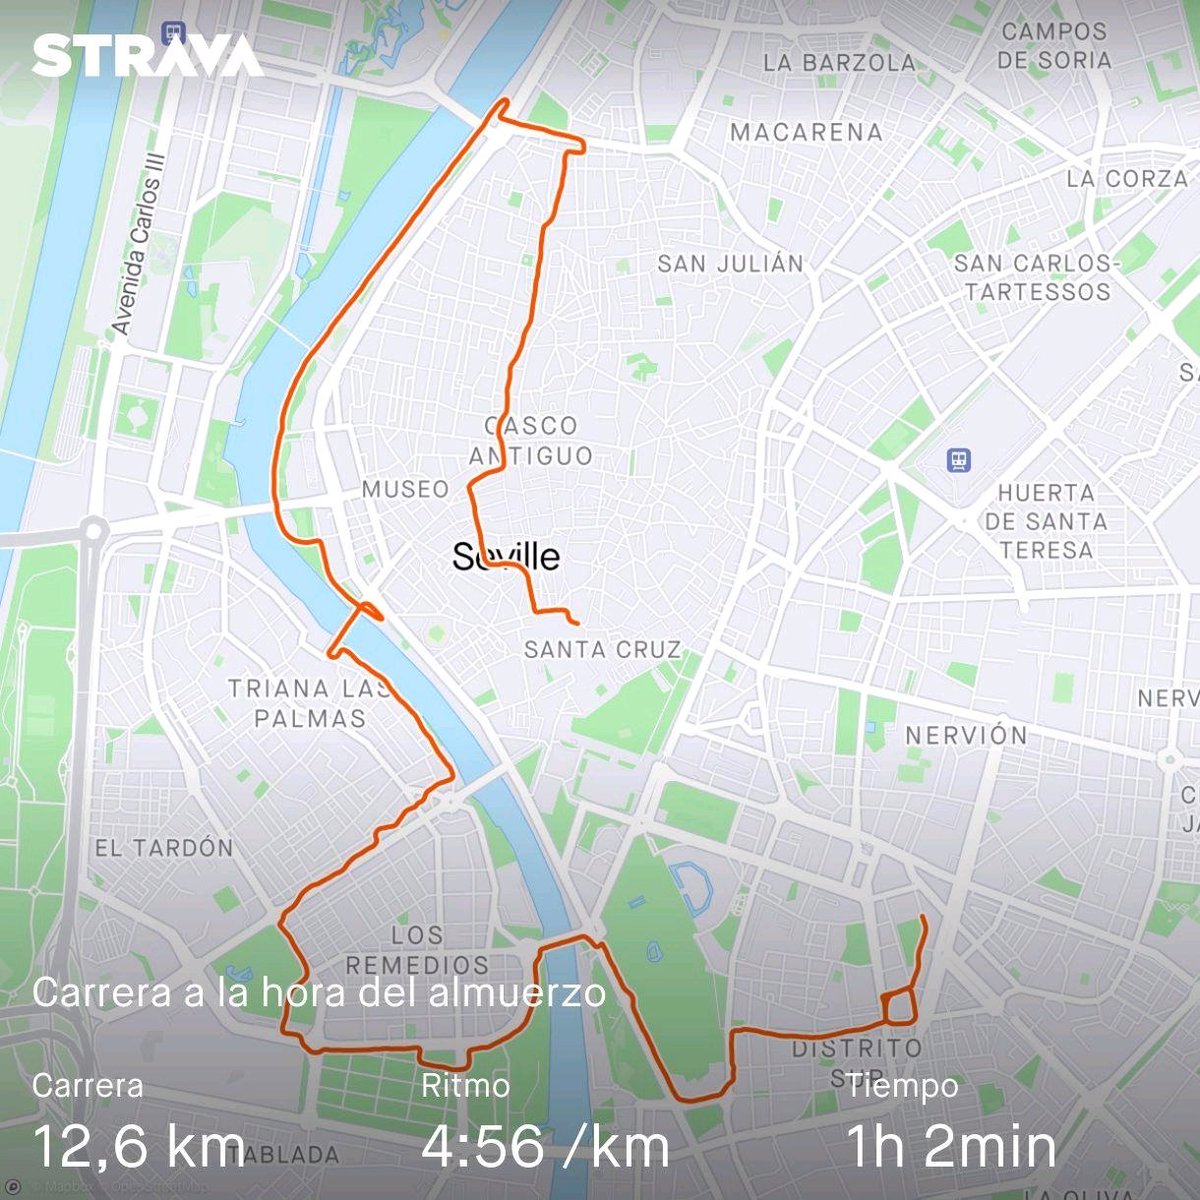 Carrera mañanera por #ríoGuadalquivir #Sevilla #running #runtoeat Echa un vistazo a mi actividad en Strava: strava.app.link/6WnmZtvy8Ib